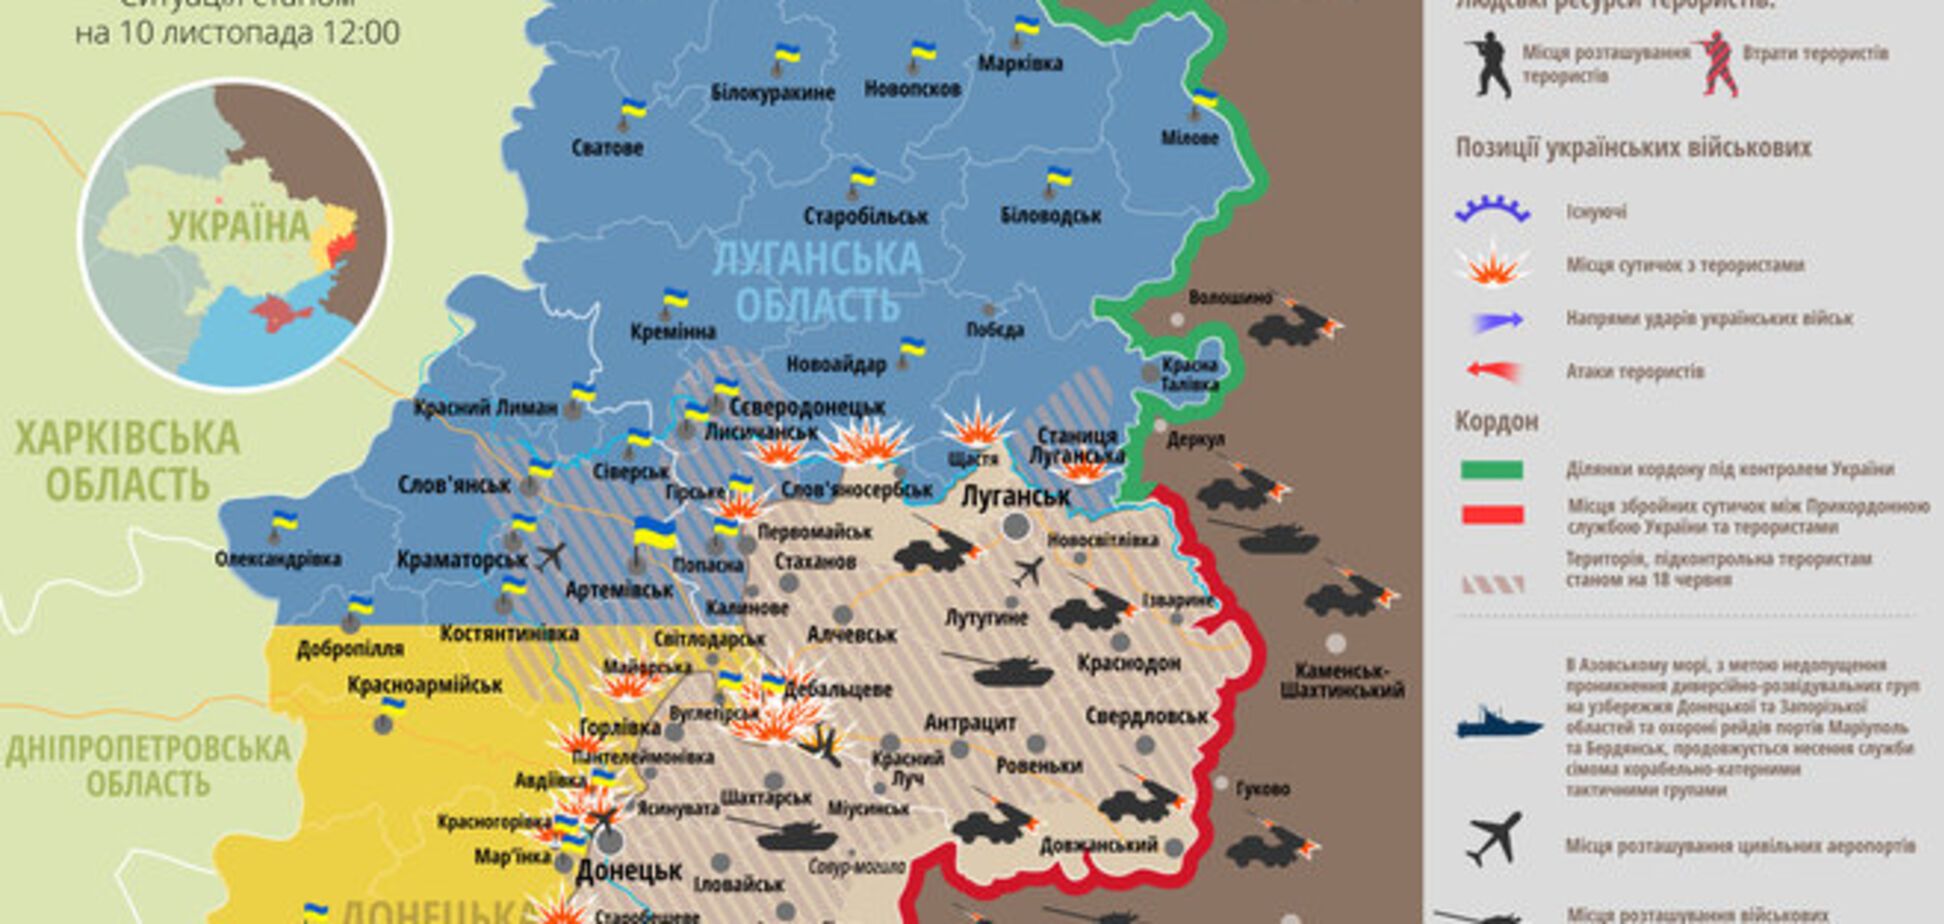 Российско-террористические войска концентрируют силы вдоль линии фронта: карта АТО